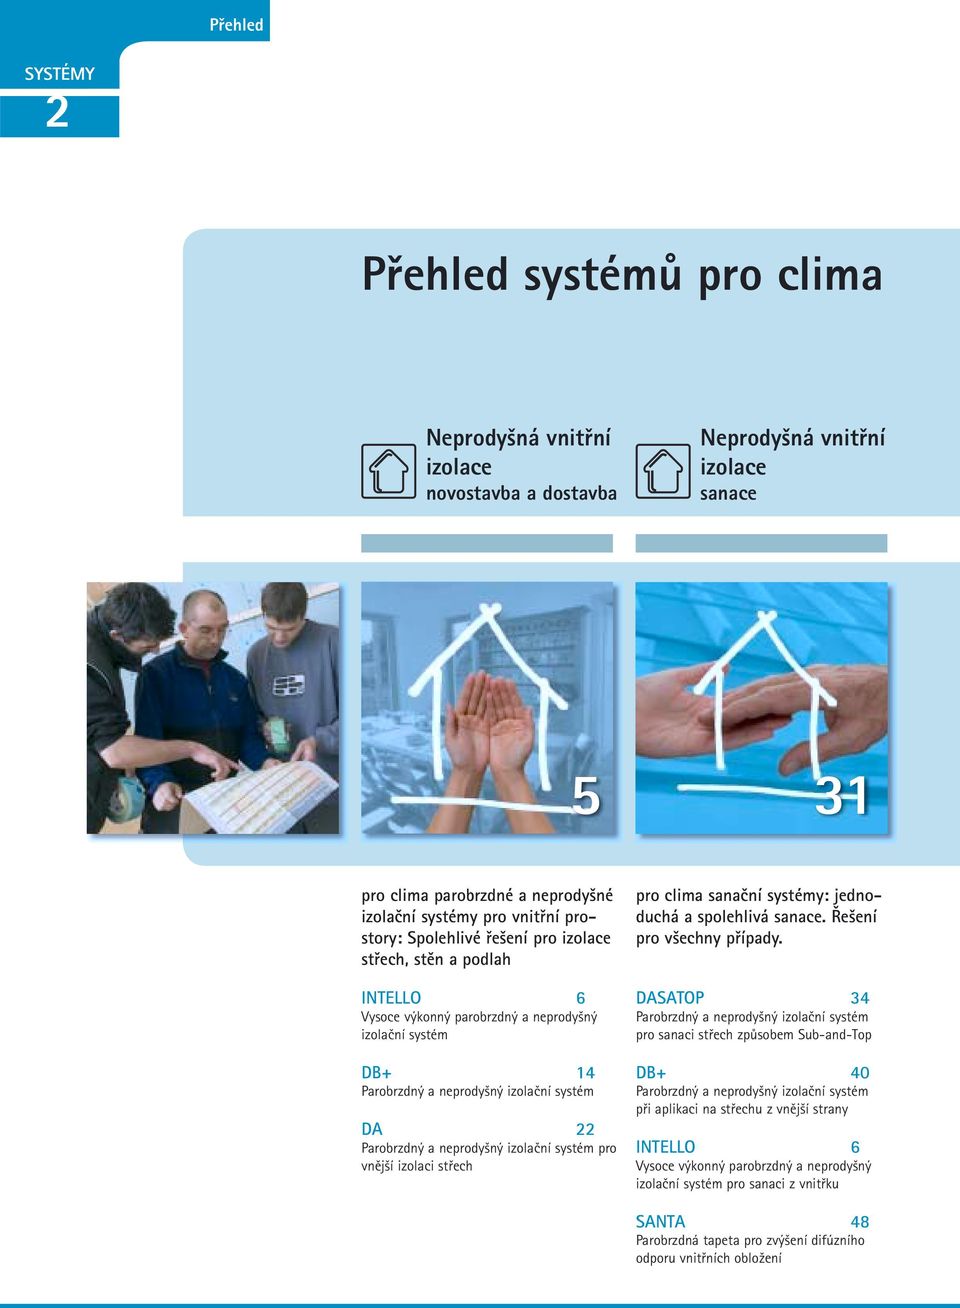 izolační systém pro vnější izolaci střech pro clima sanační systémy: jednoduchá a spolehlivá sanace. Řešení pro všechny případy.